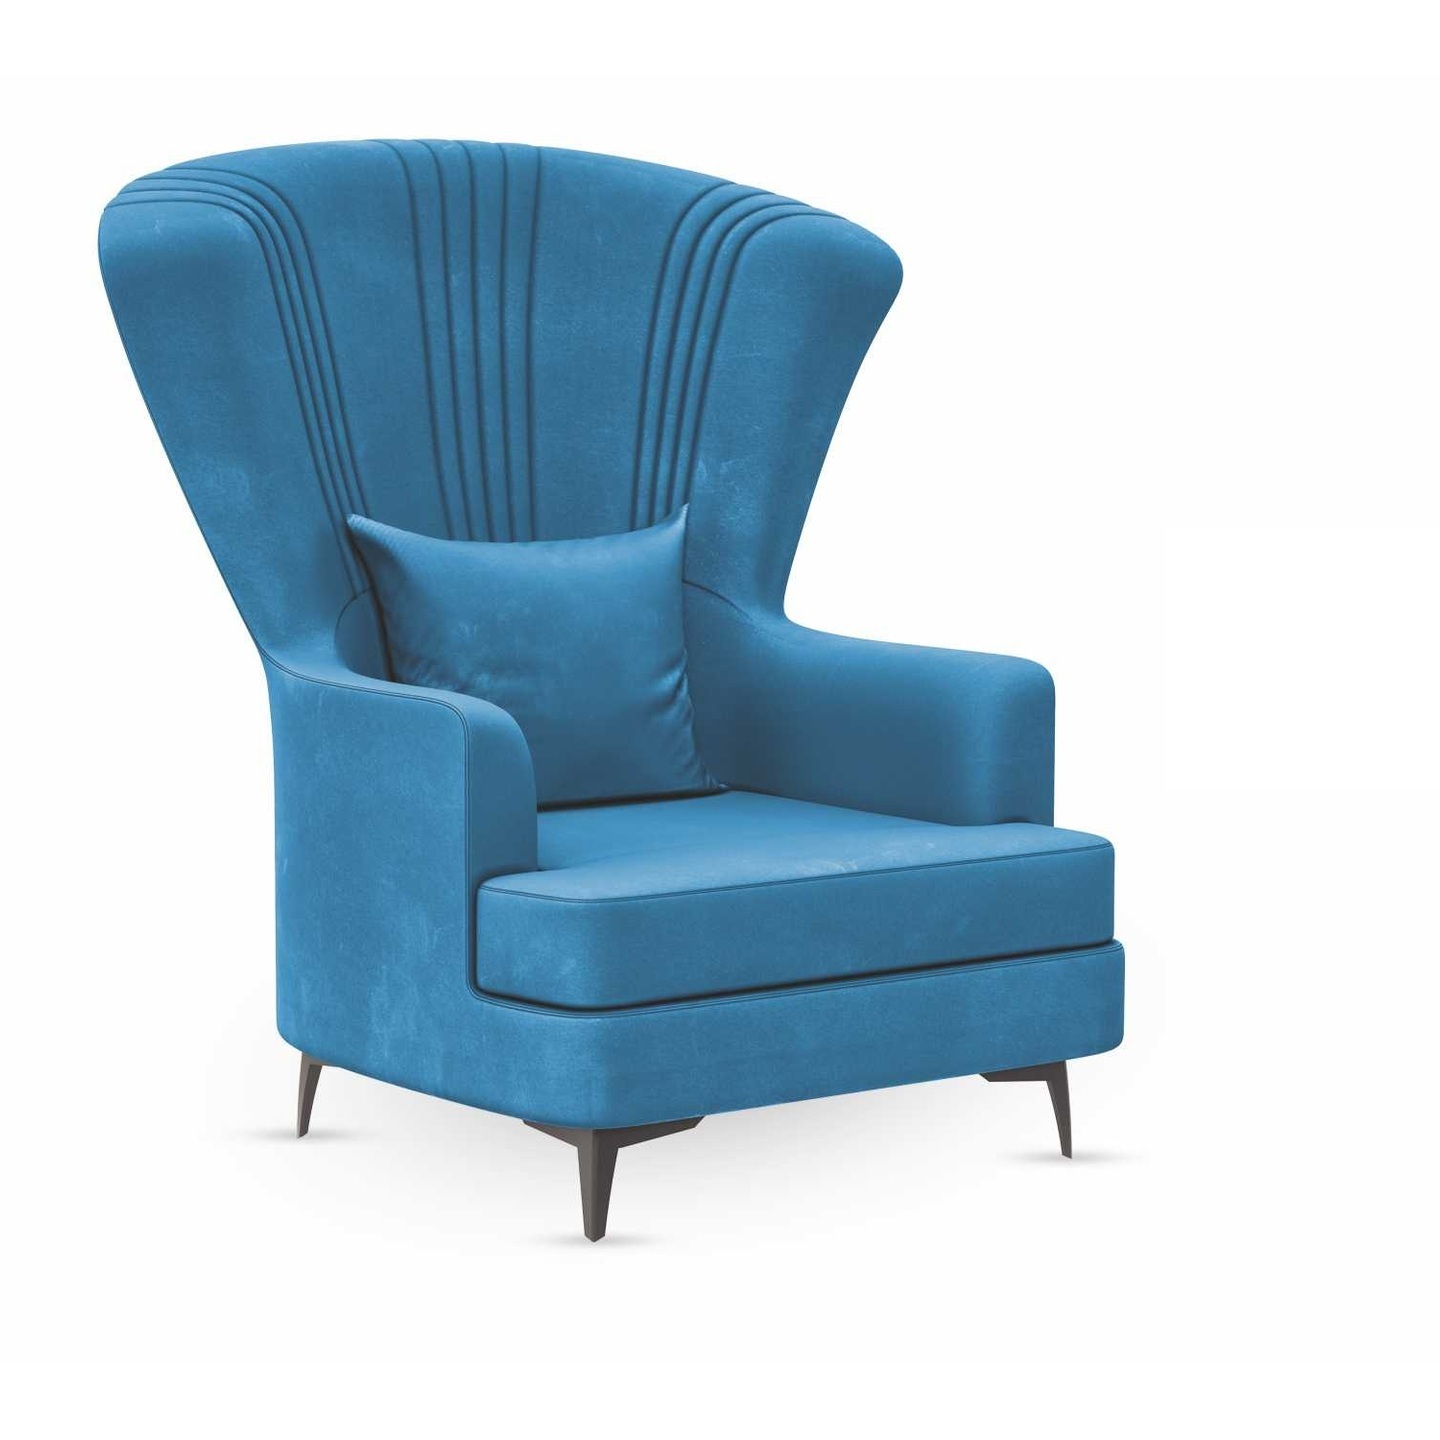 DDF Sofa Chair C-04 In Blue Colour